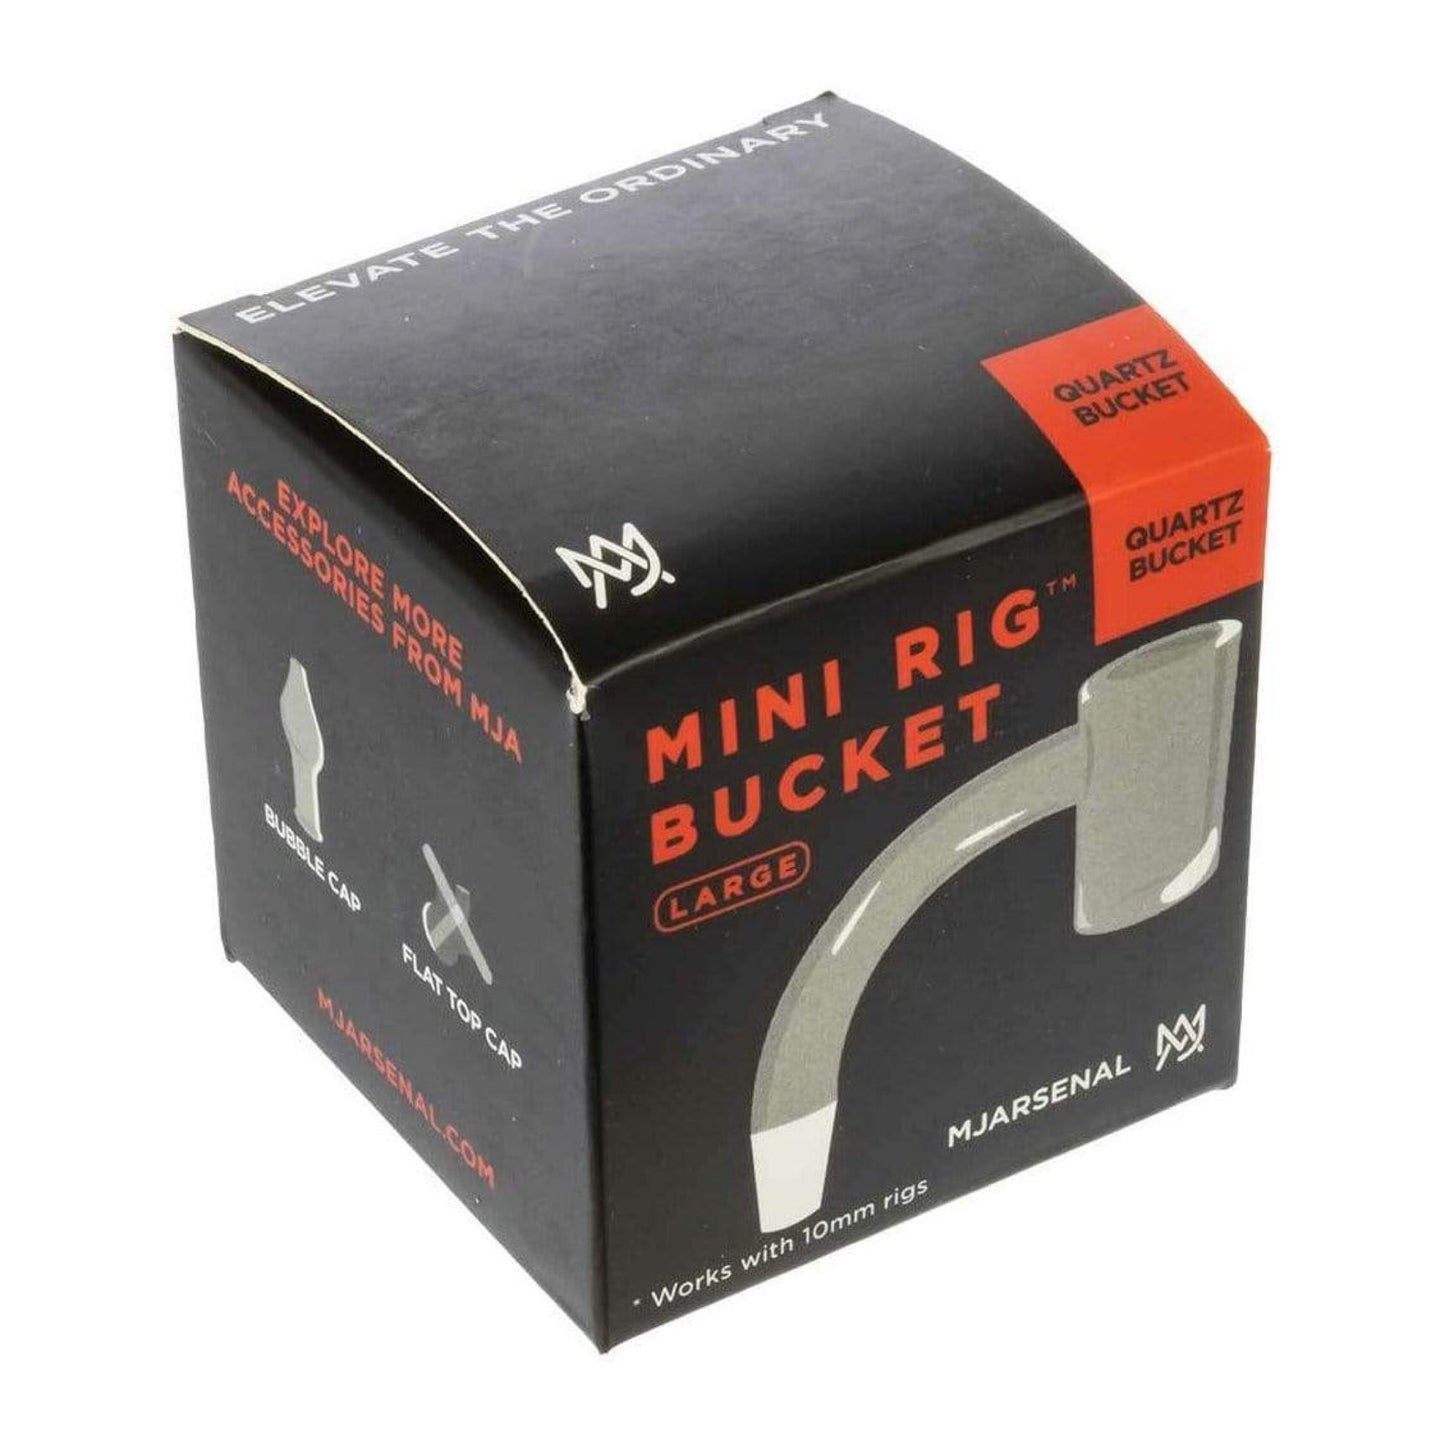 MJ Arsenal Mini Rig Quartz Bucket - 10mm Male